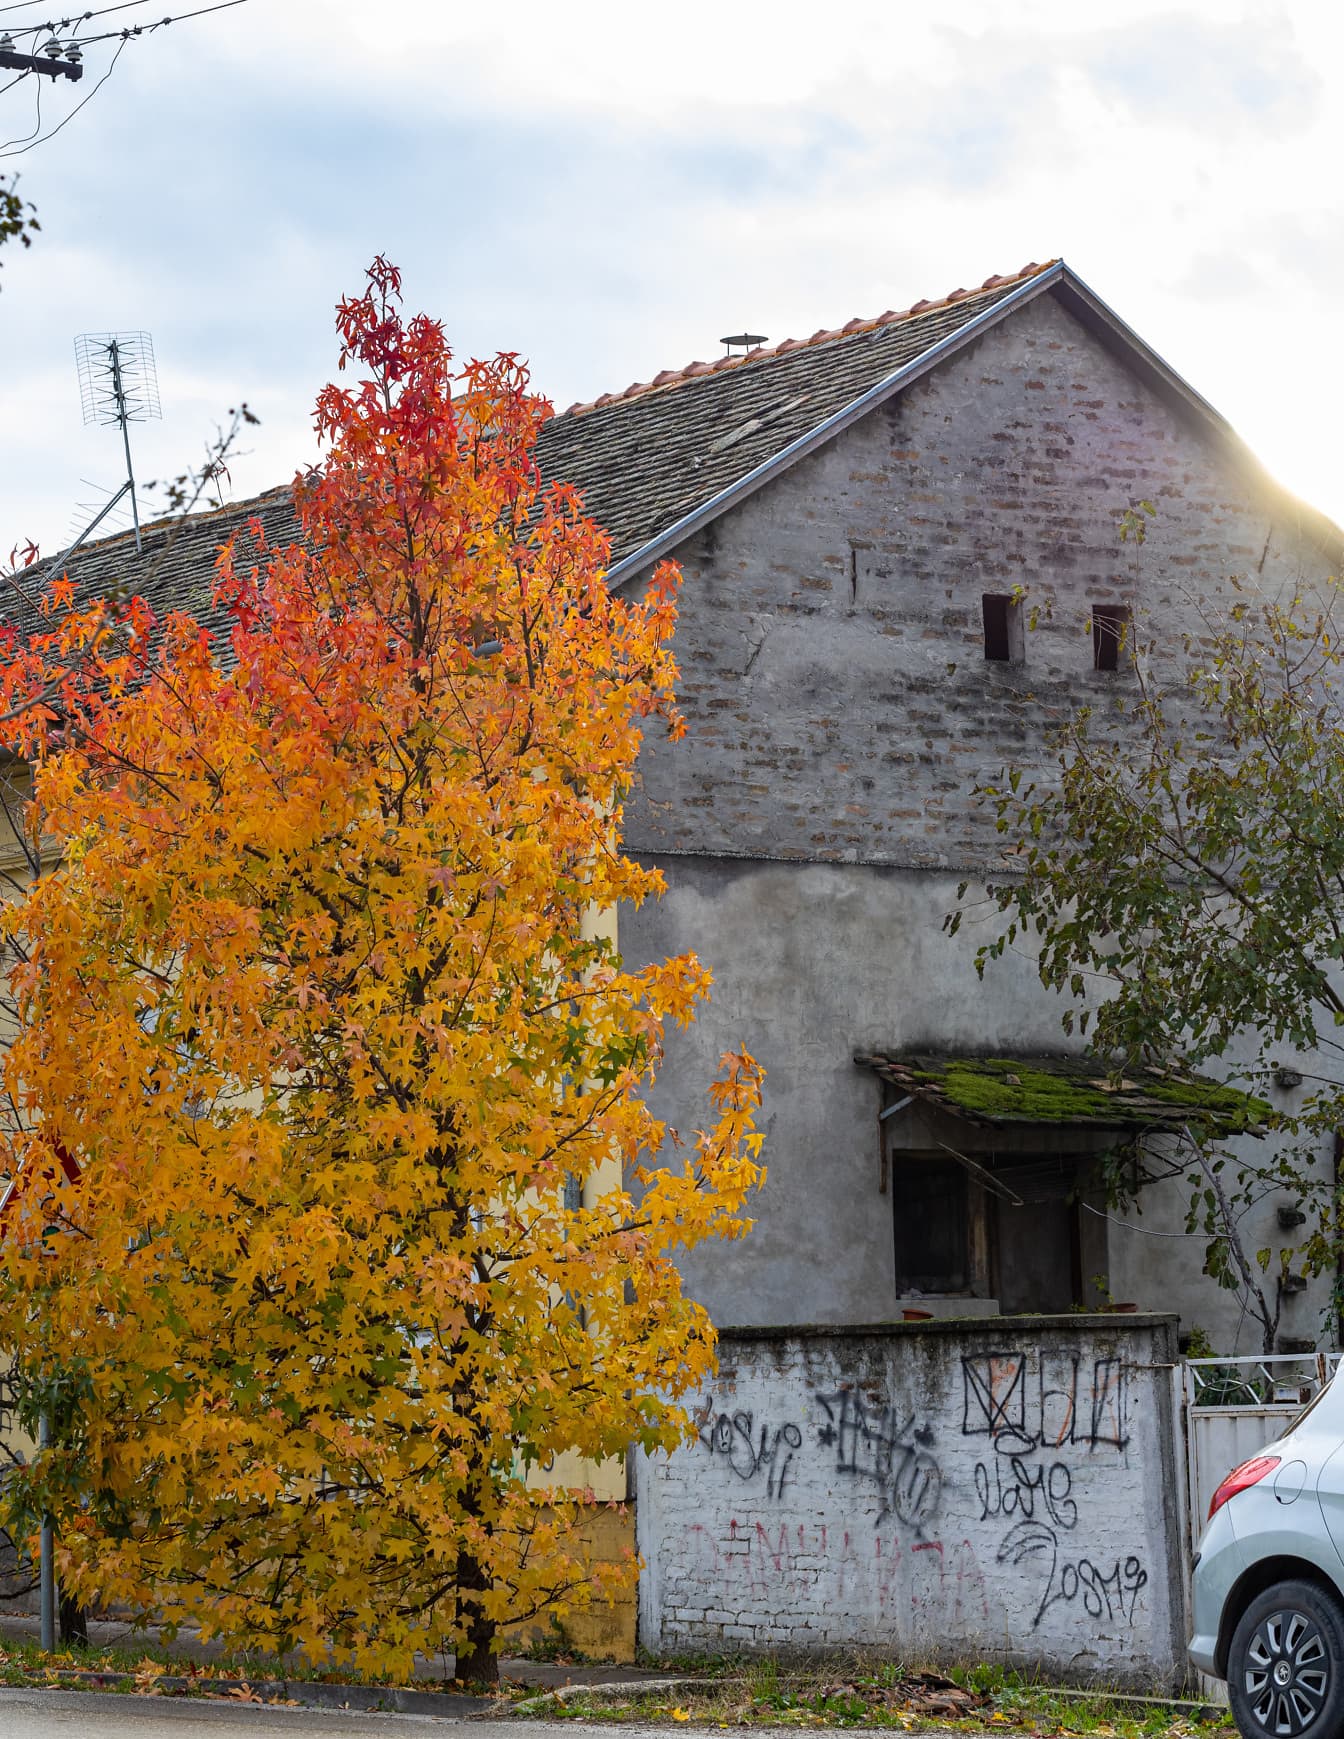 Hojas de color amarillo anaranjado en el árbol de la calle y casa en descomposición en el fondo